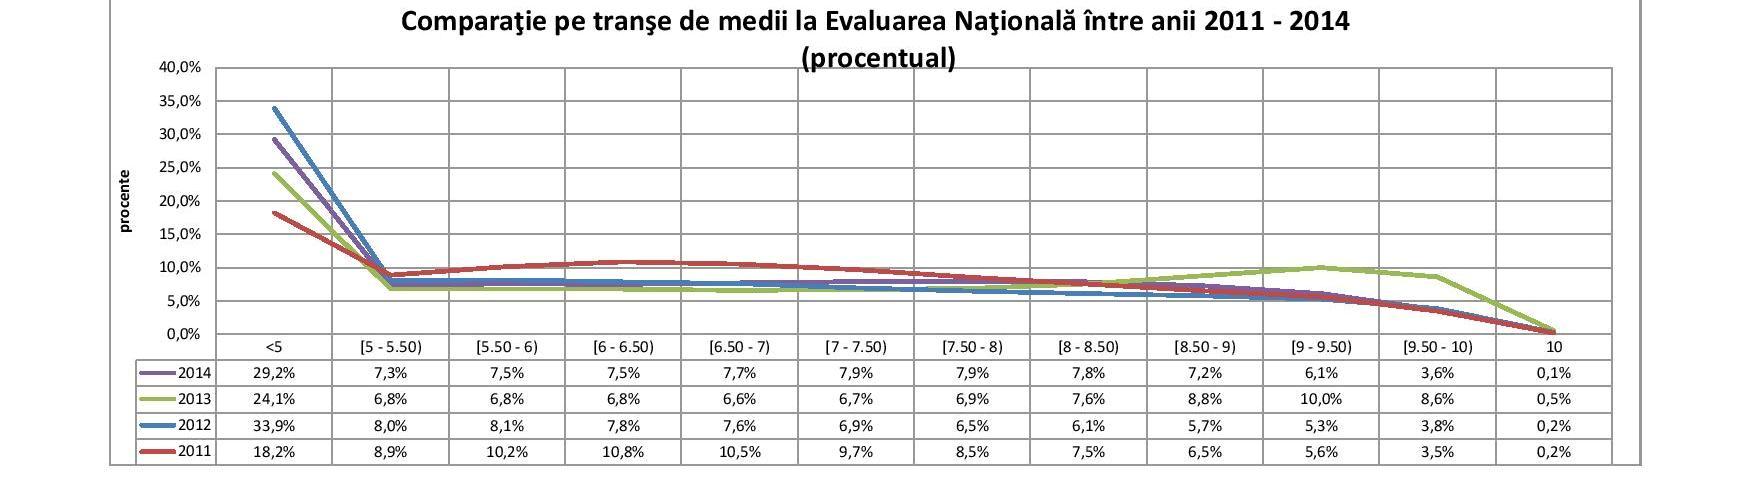 Evaluare Nationala - medii 2011-2014